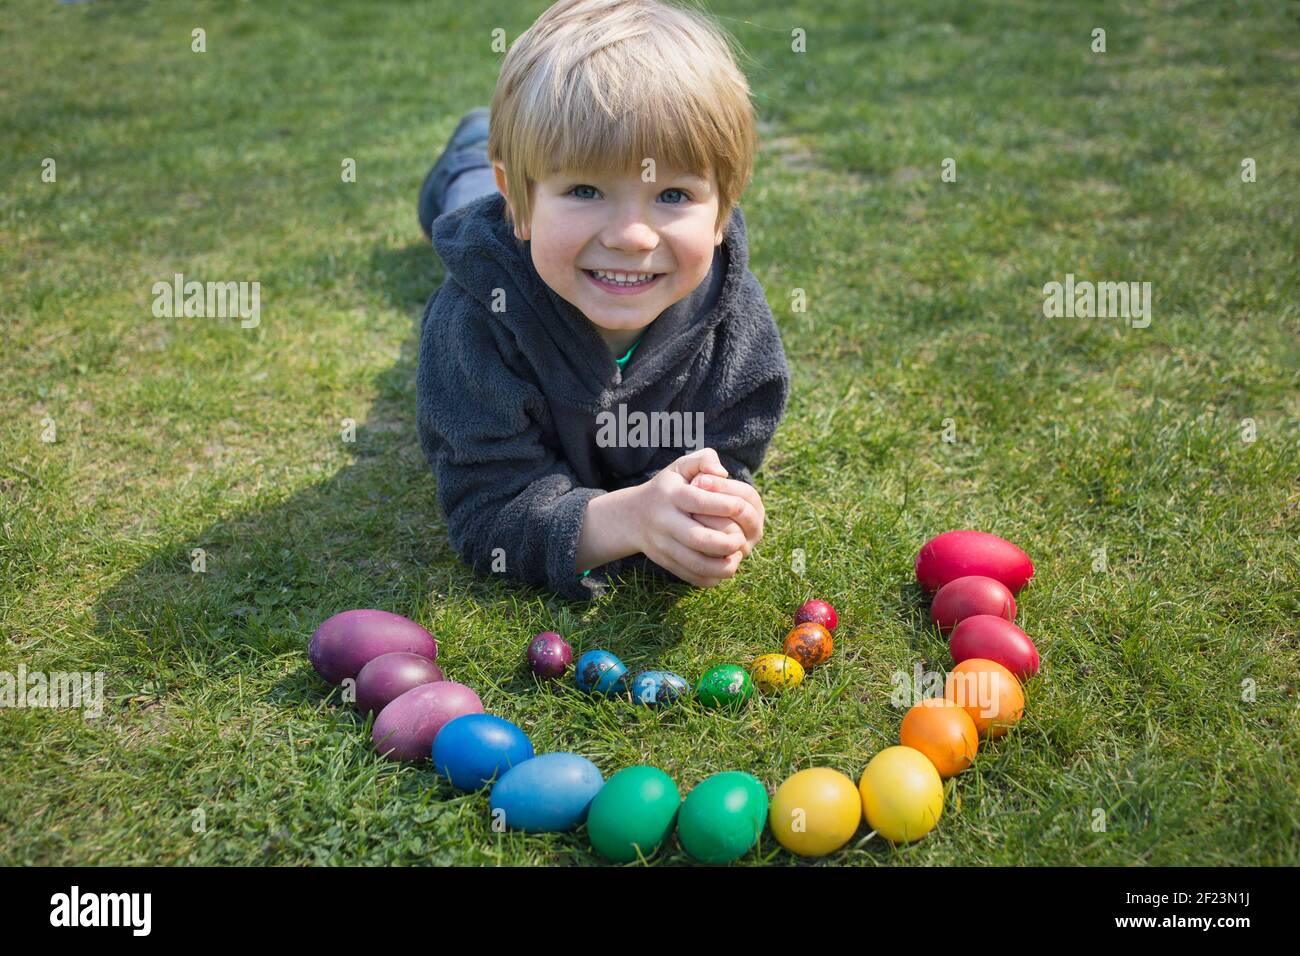 Un jeune garçon heureux se trouve sur l'herbe près du poulet et des œufs de caille, de couleurs vives dans les couleurs de l'arc-en-ciel, le jour ensoleillé du printemps. Traditions familiales, enfant joyeux Banque D'Images